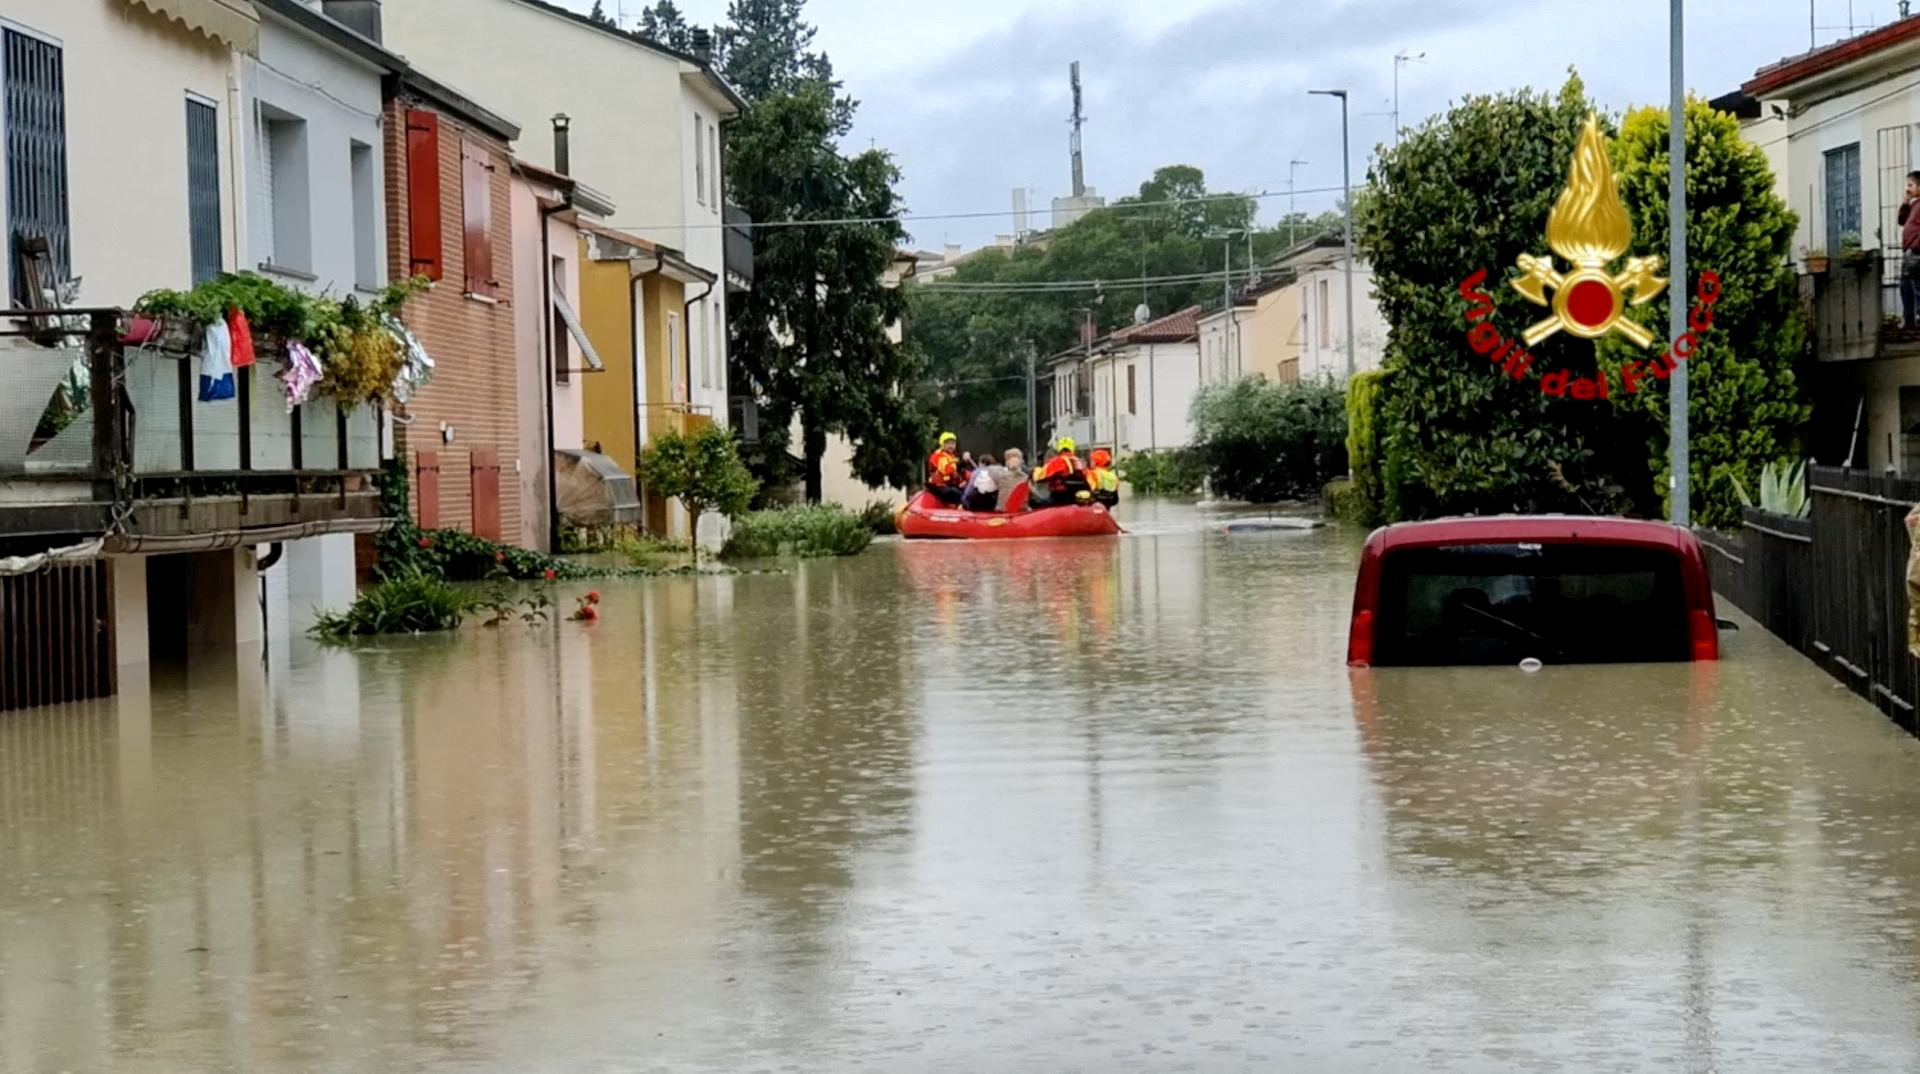 Rescatistas llevan a la gente a un lugar seguro durante las operaciones de rescate, en Forli, Italia, en esta imagen difundida el 17 de mayo de 2023 (REUTERS)